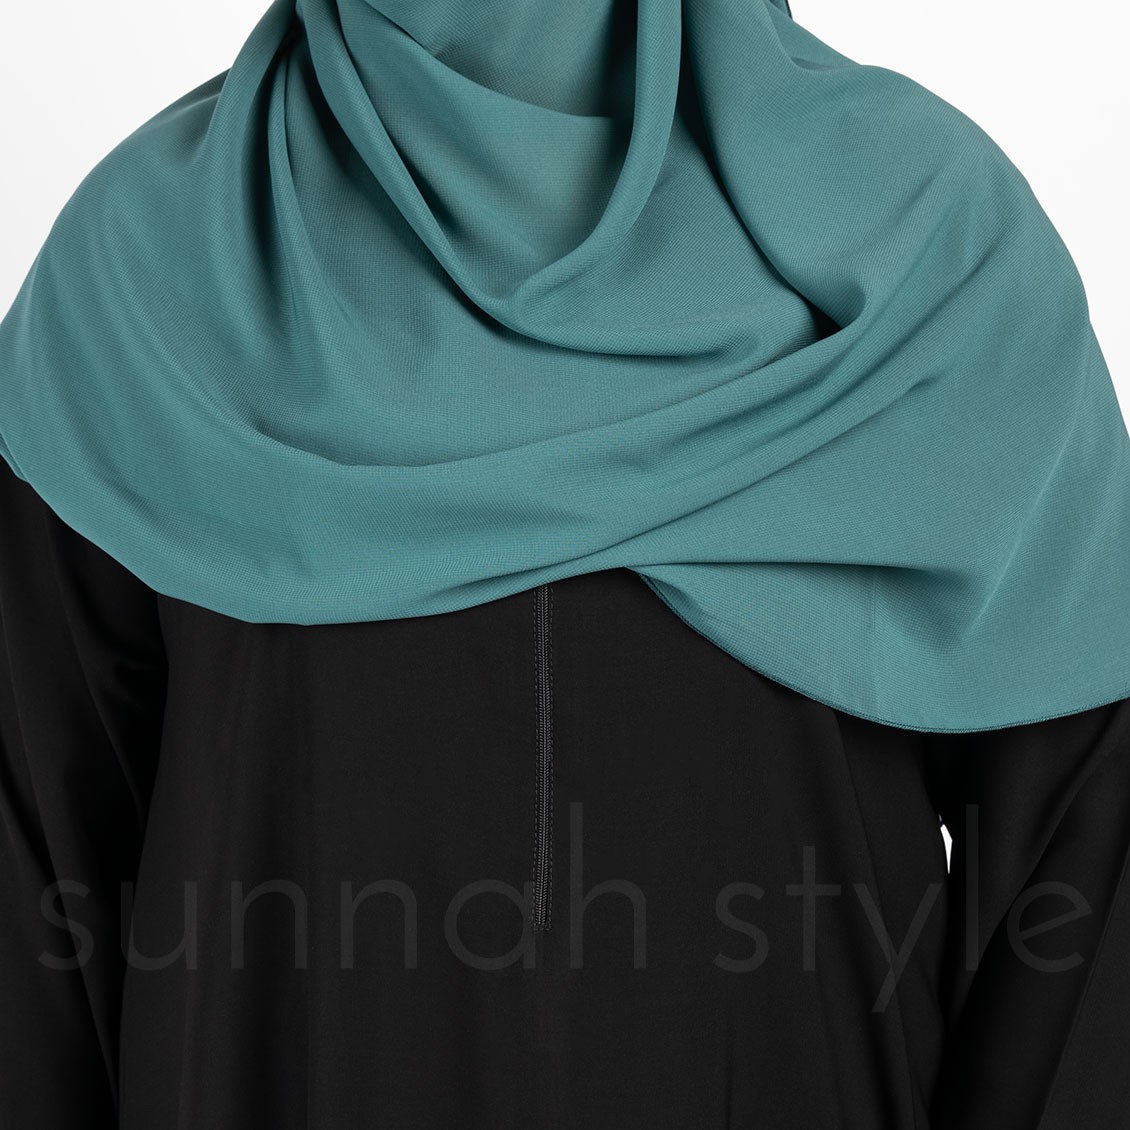 Sunnah Style Plain Closed Abaya Slim Black